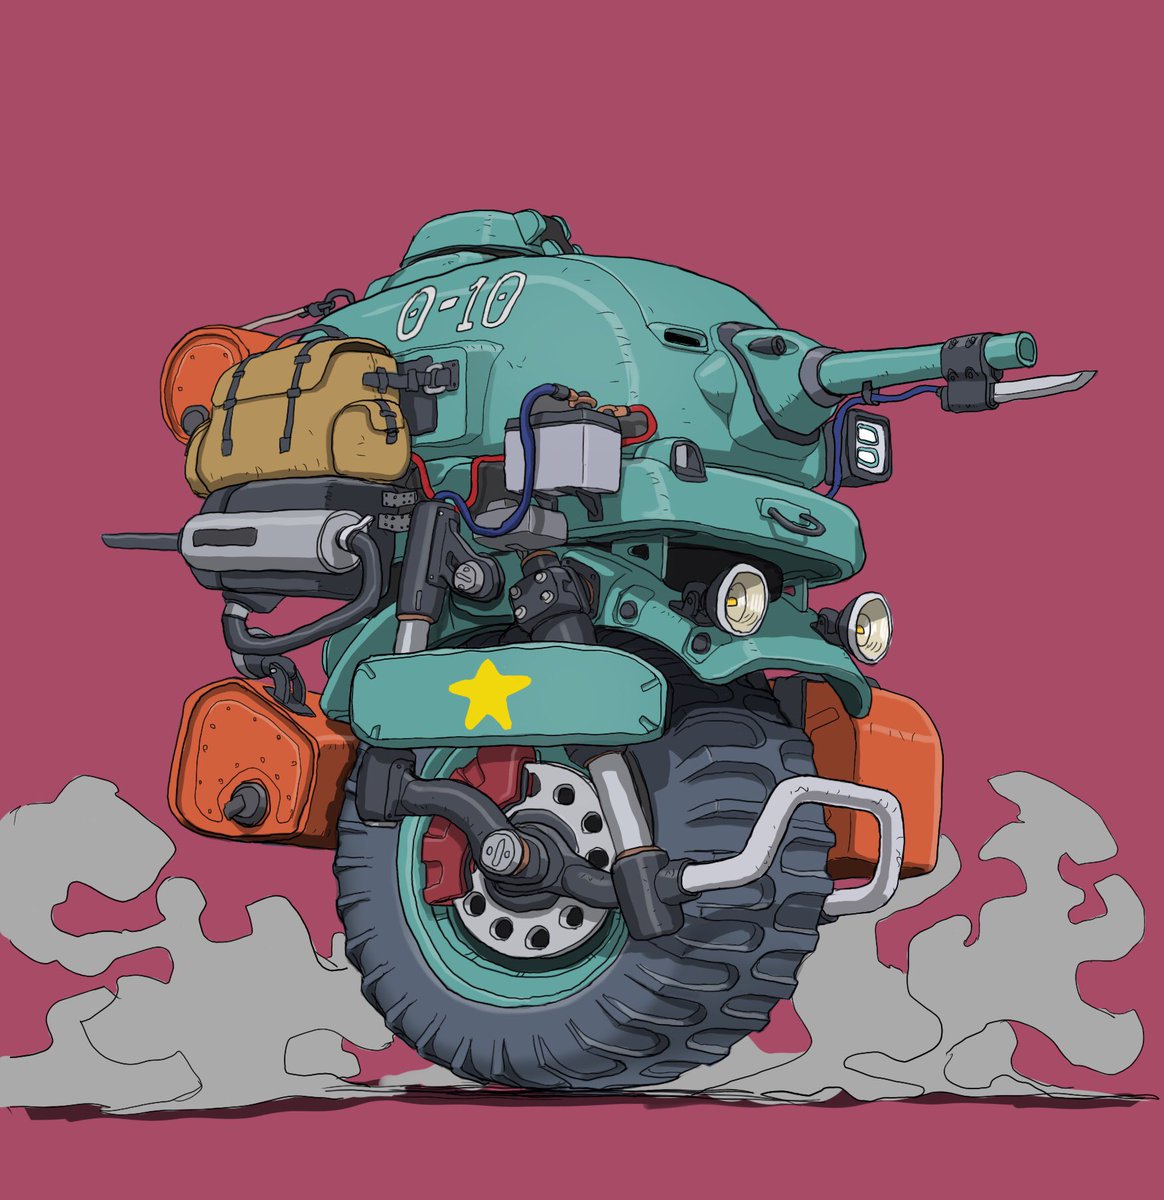 「#メカ #イラスト #illustration 
楽しい戦車 」|がとりんぐ三等兵のイラスト